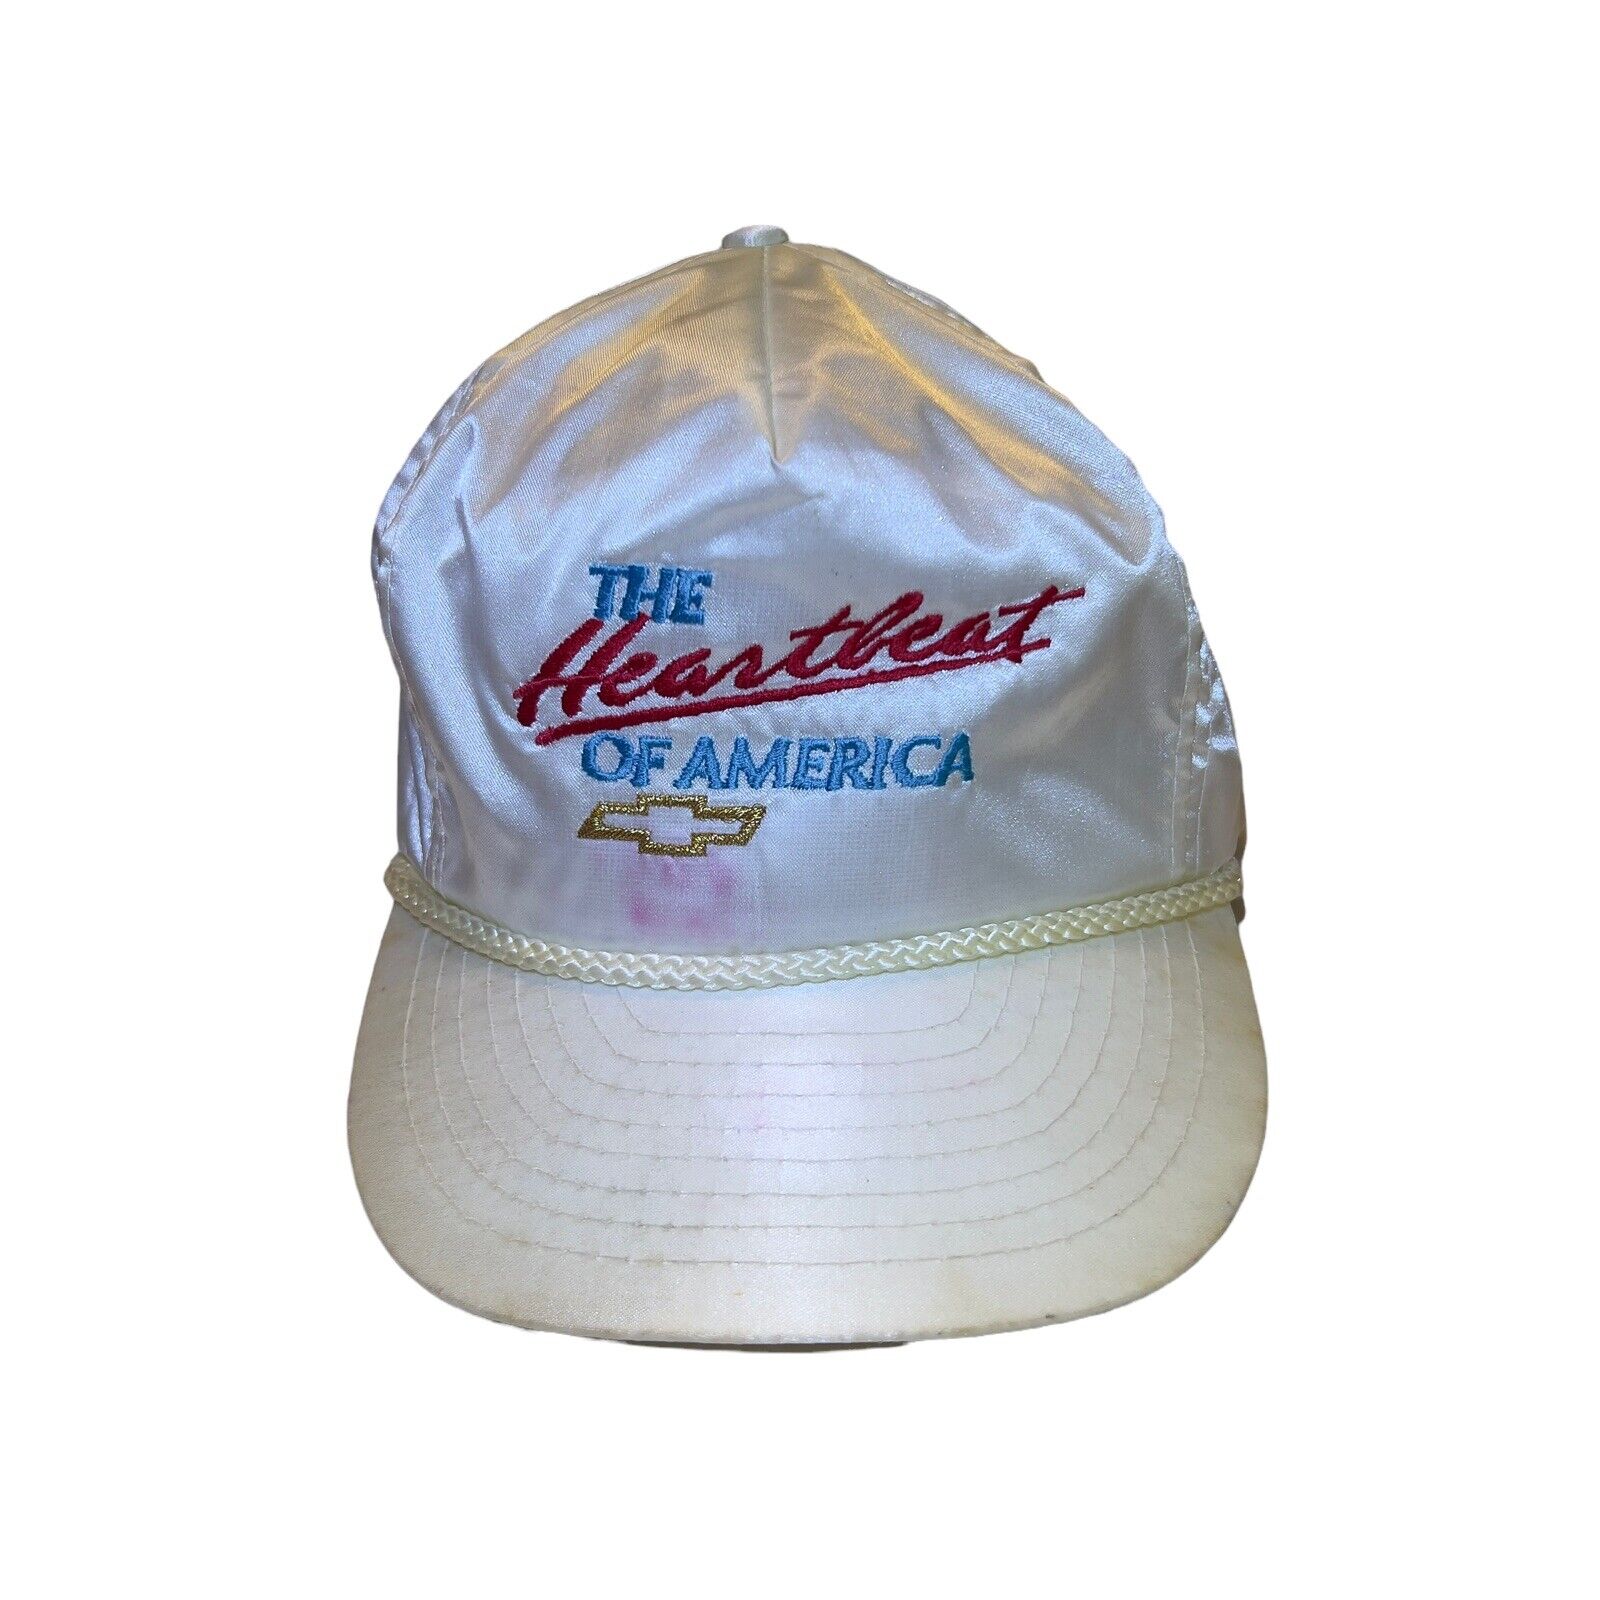 VTG The Heartbeat of America Embroidered Rope Nylon Slideback Men White Hat RARE